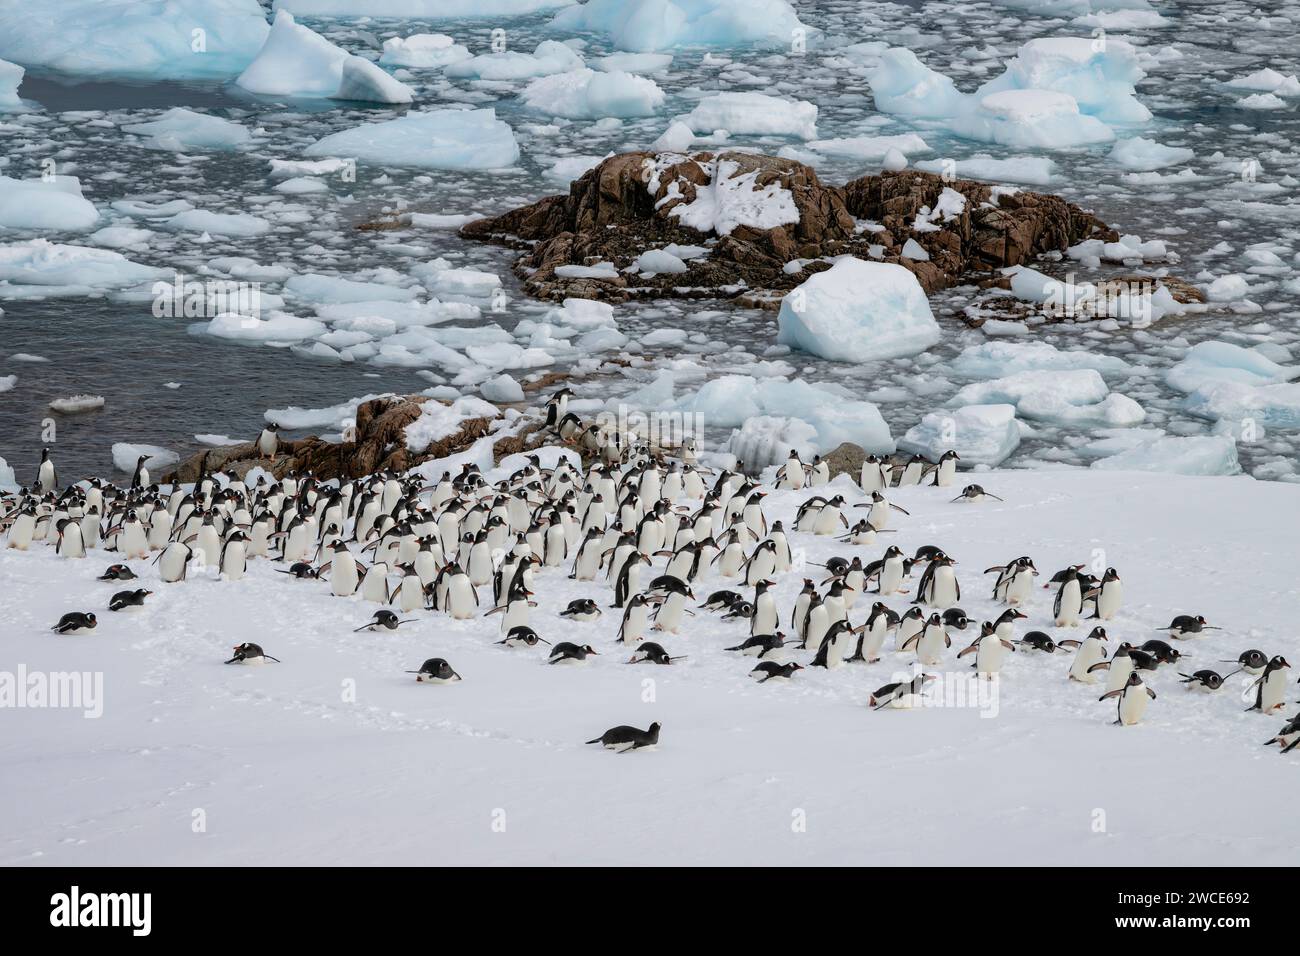 Los pingüinos Gentoo llegan a los criaderos, el puerto de Neko, la Antártida, caminan en la nieve y el hielo para encontrar el lugar de anidación, en la orilla después de salir del agua Foto de stock